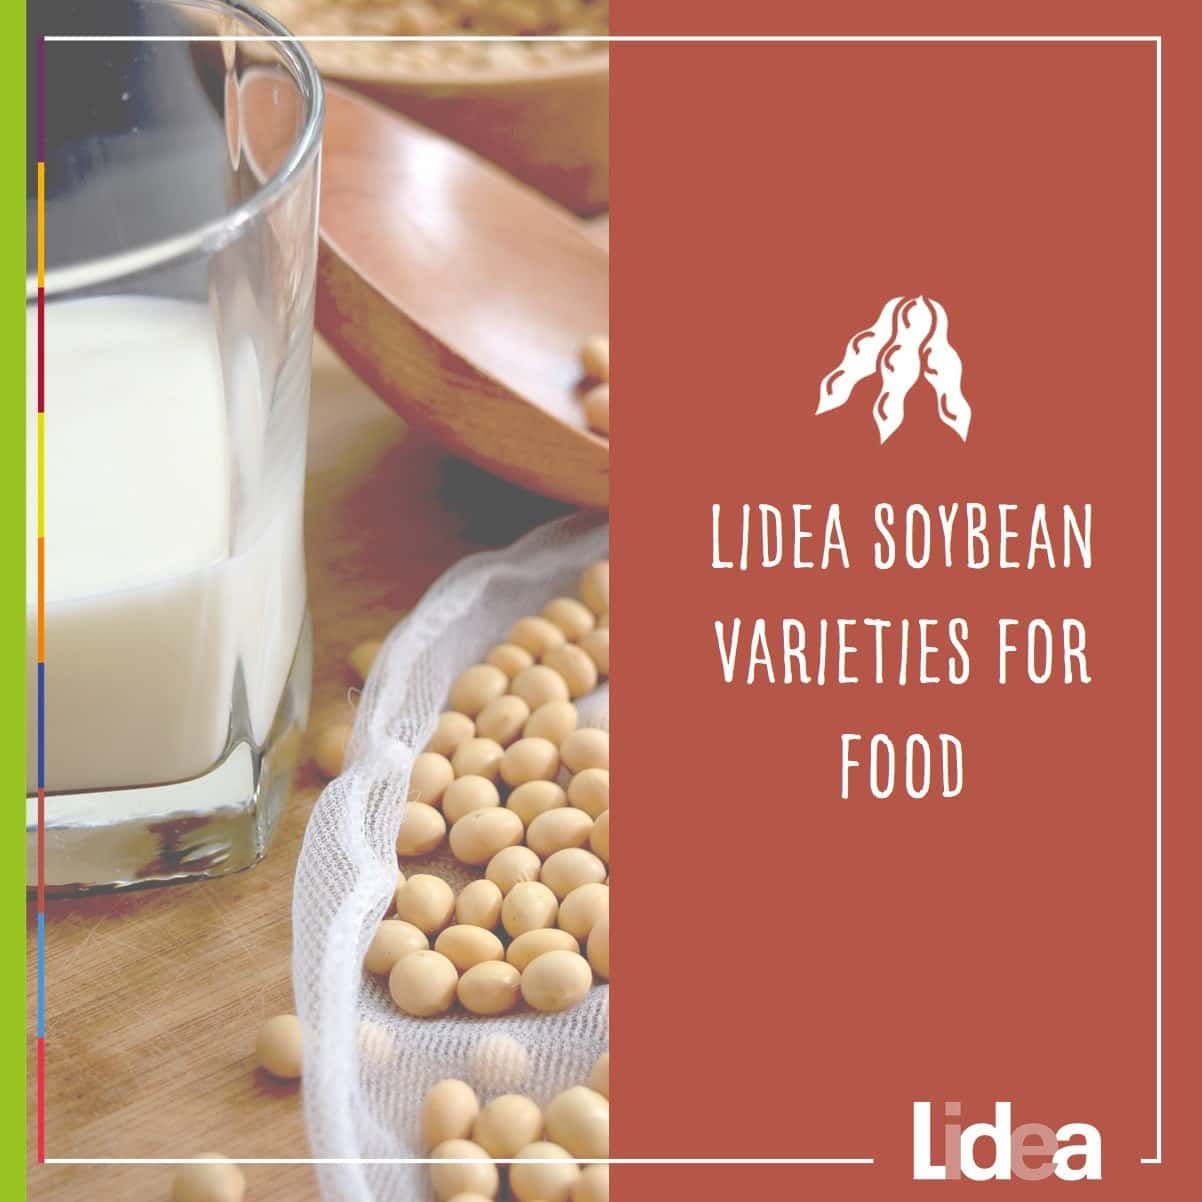 Lidea soybean varieties for food